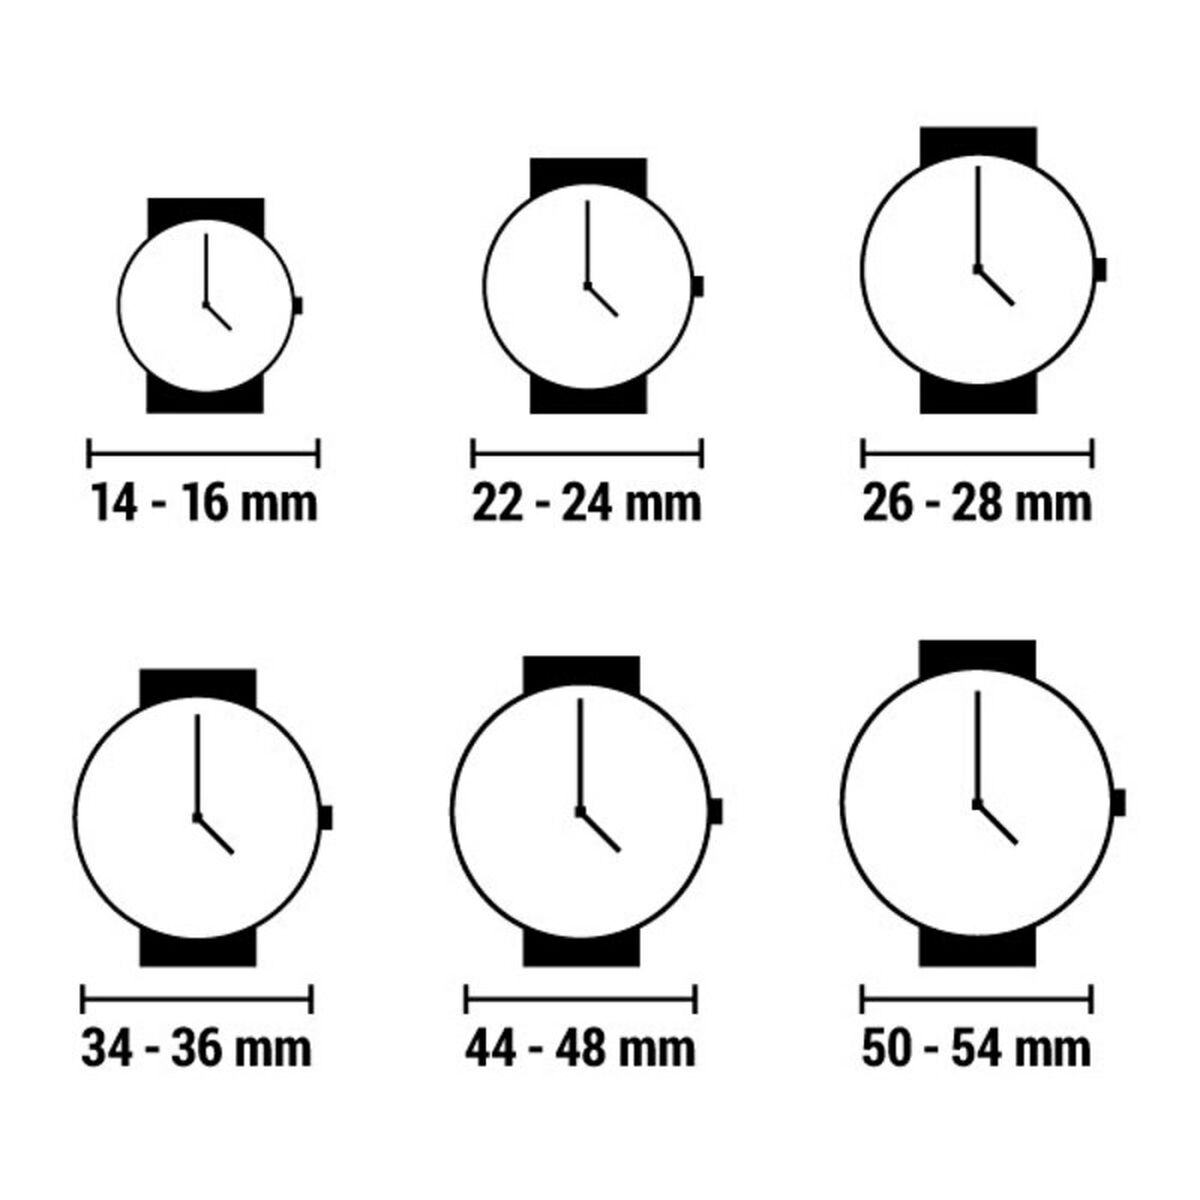 Horloge Dames Nixon A1091-3005-00 (Ø 38 mm)